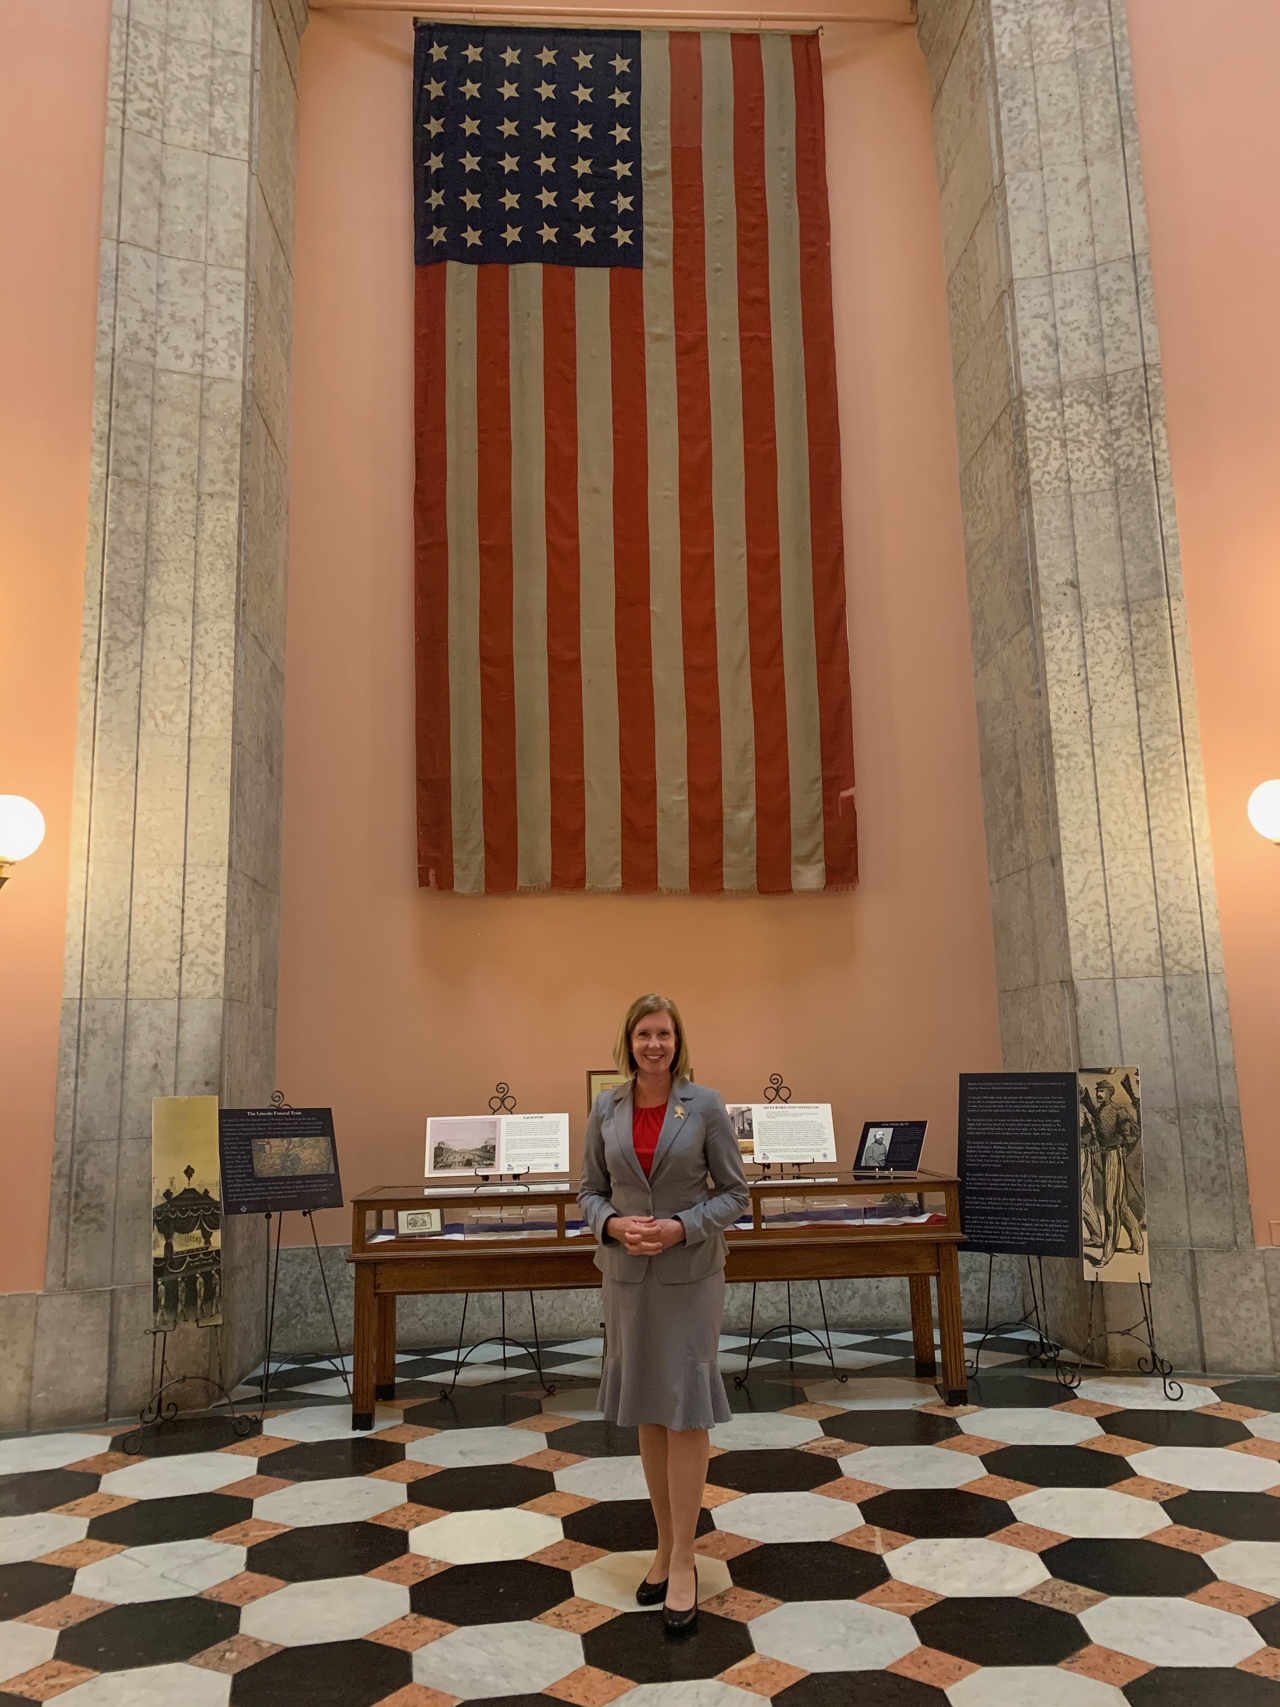 Representative Abrams in the Statehouse Rotunda.